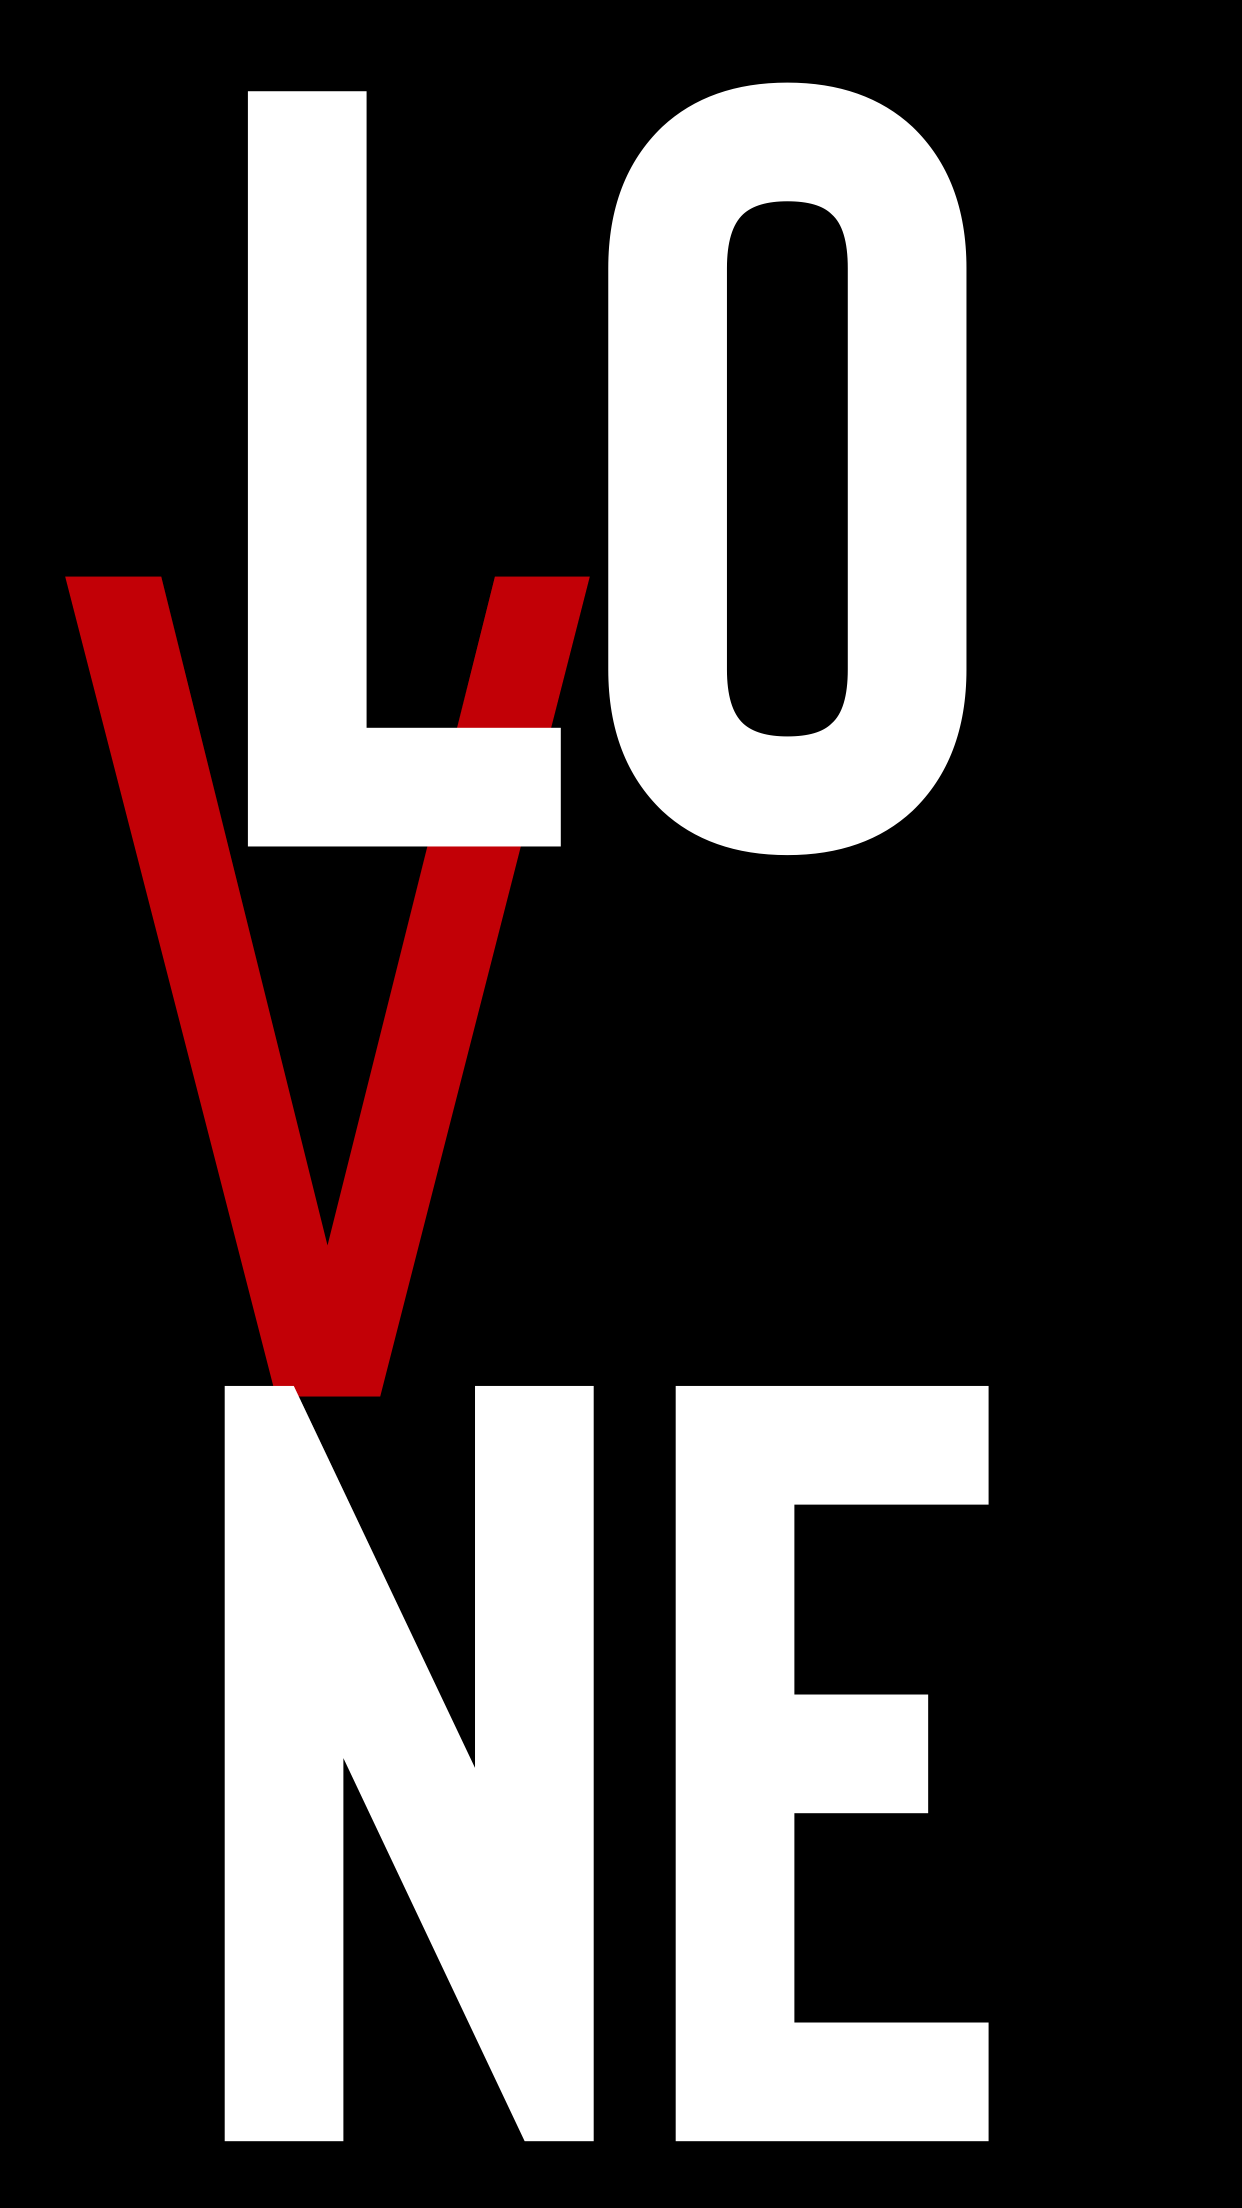 Vlone Logo Wallpaper Red ` Vlone Logo Wallpaper#logo #red #vlone